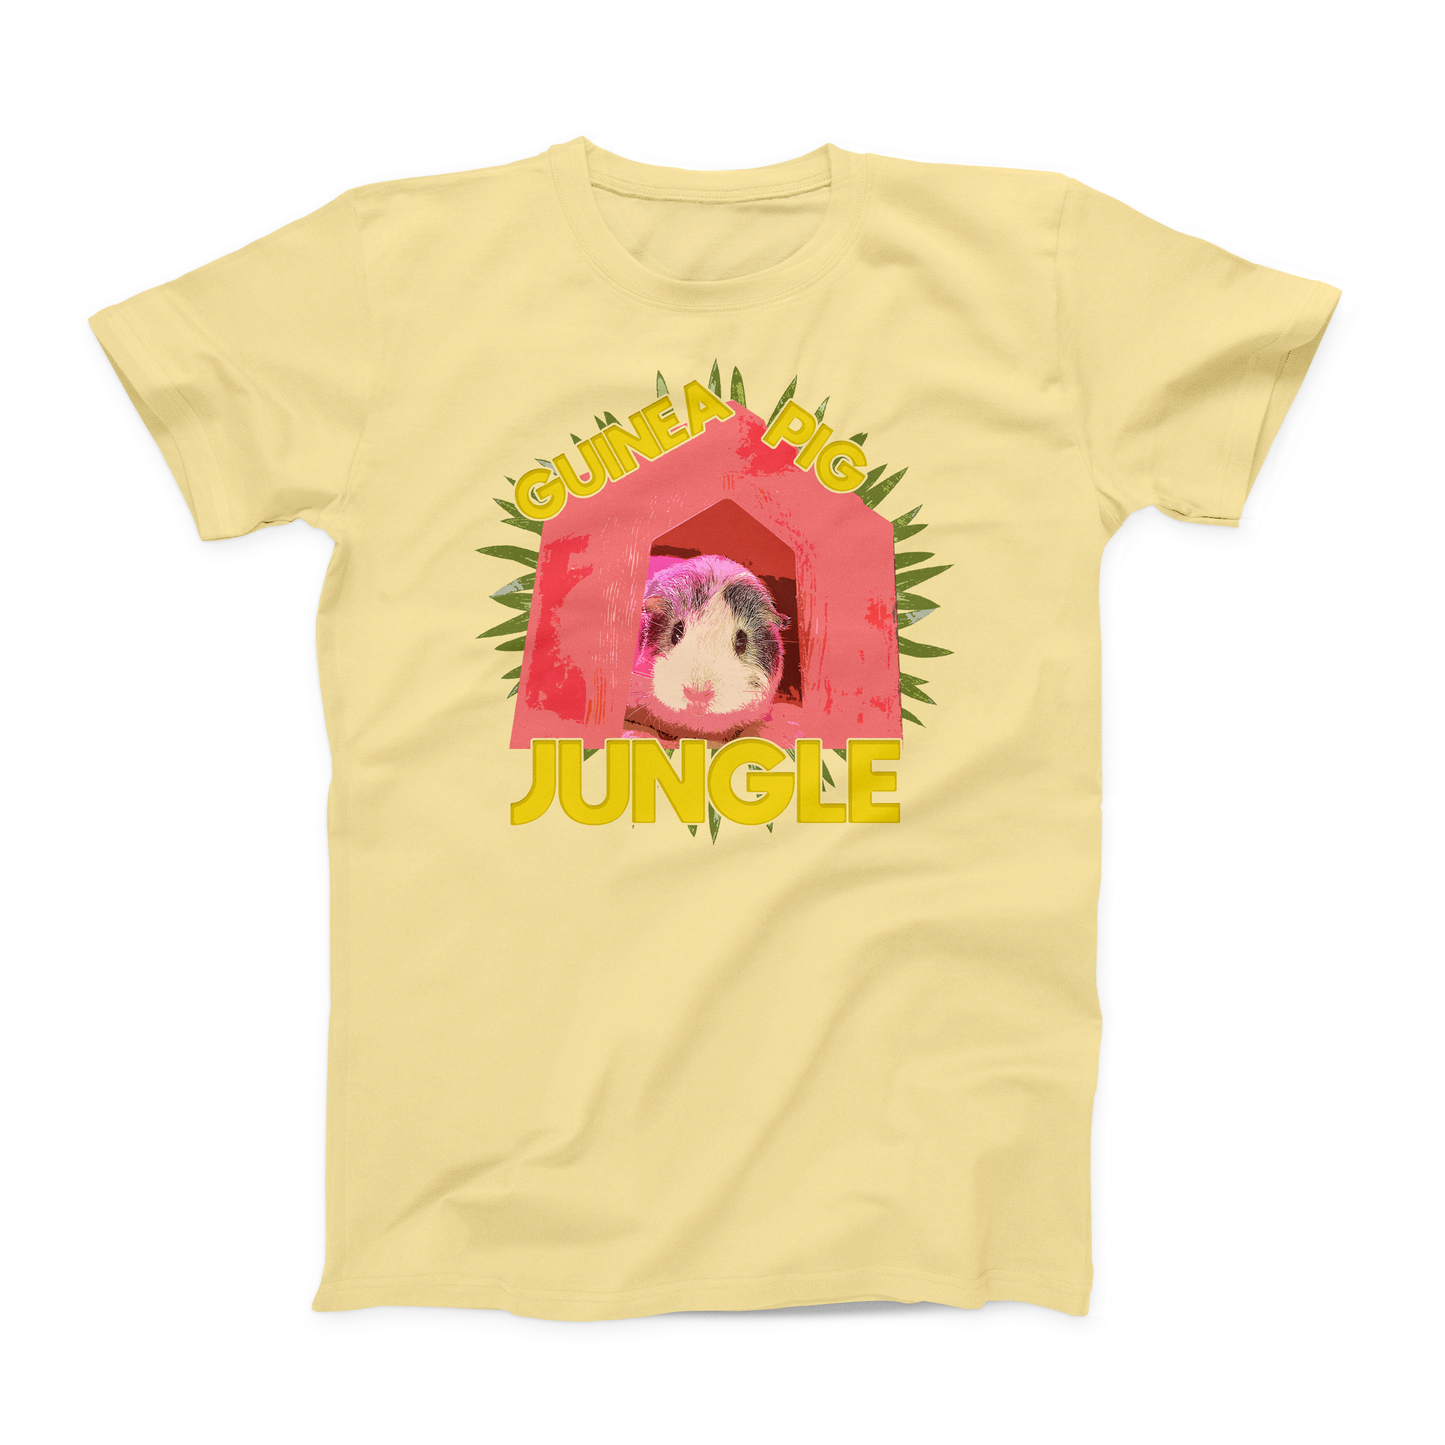 Disco Pig Youth T-Shirt : Guinea Pig Jungle Shirt: